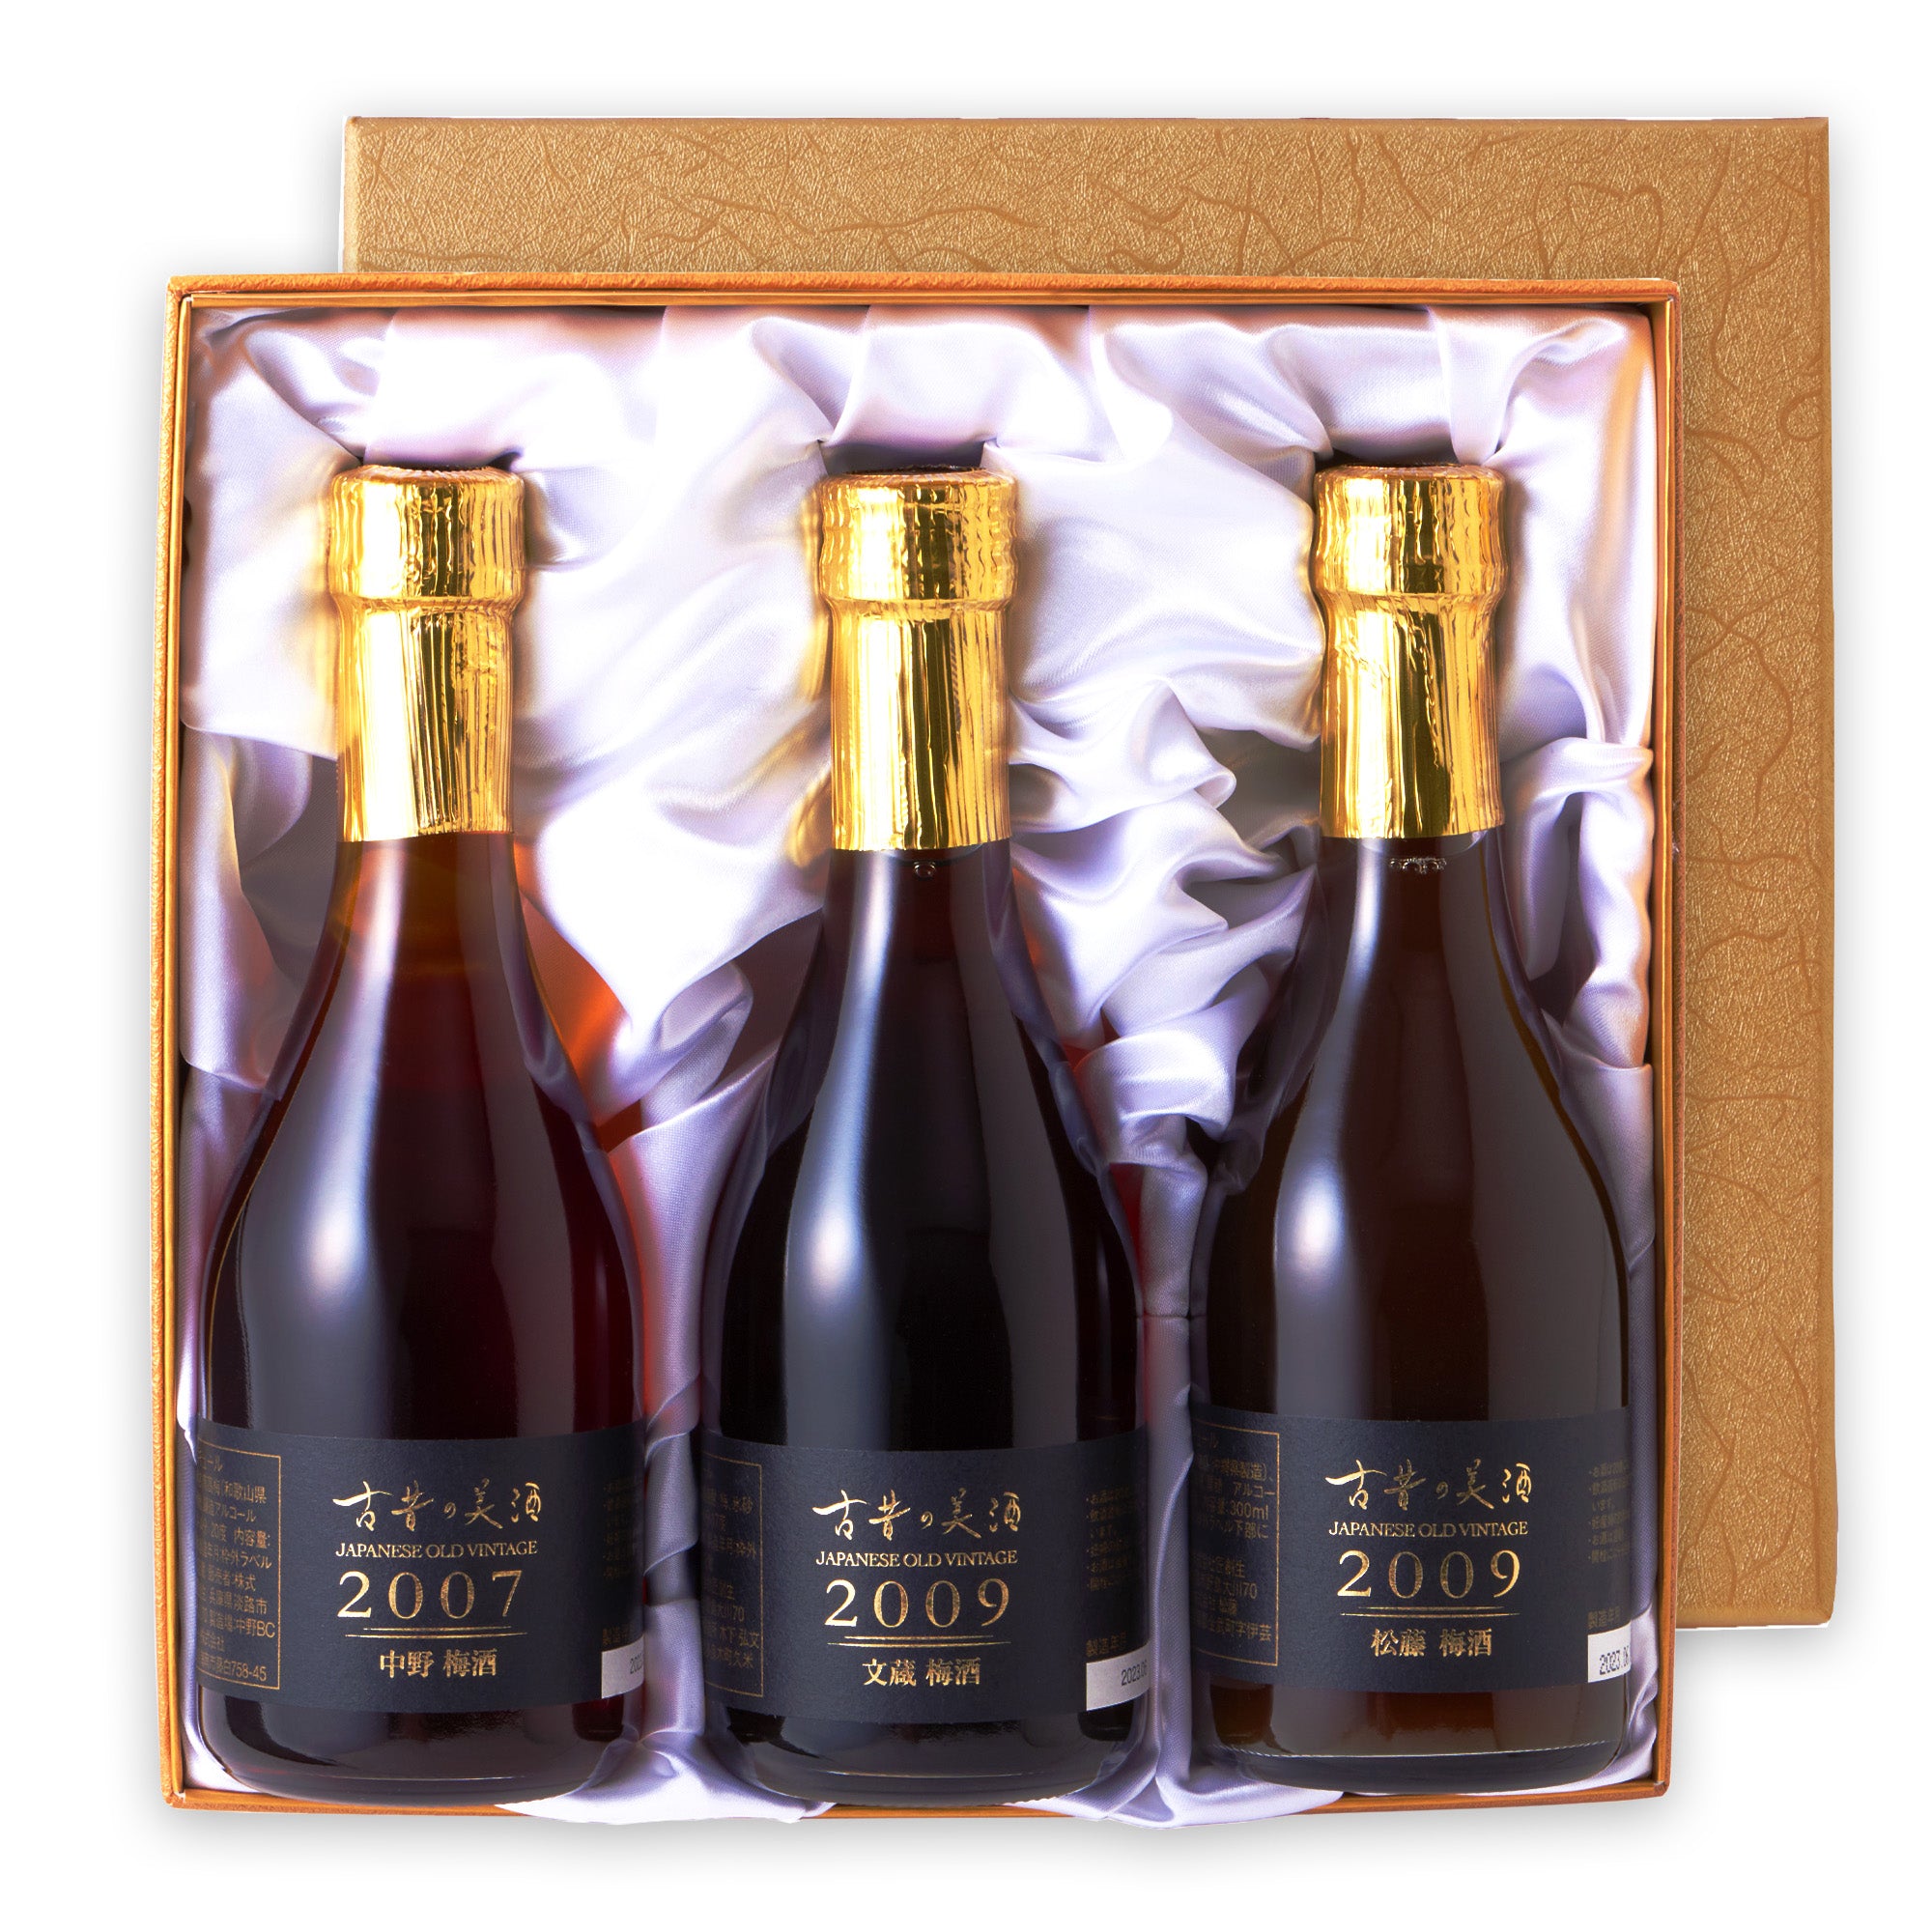 古昔の美酒 – Tagged 3本セット – JAPANESE OLD VINTAGE INISHIE 古昔の美酒